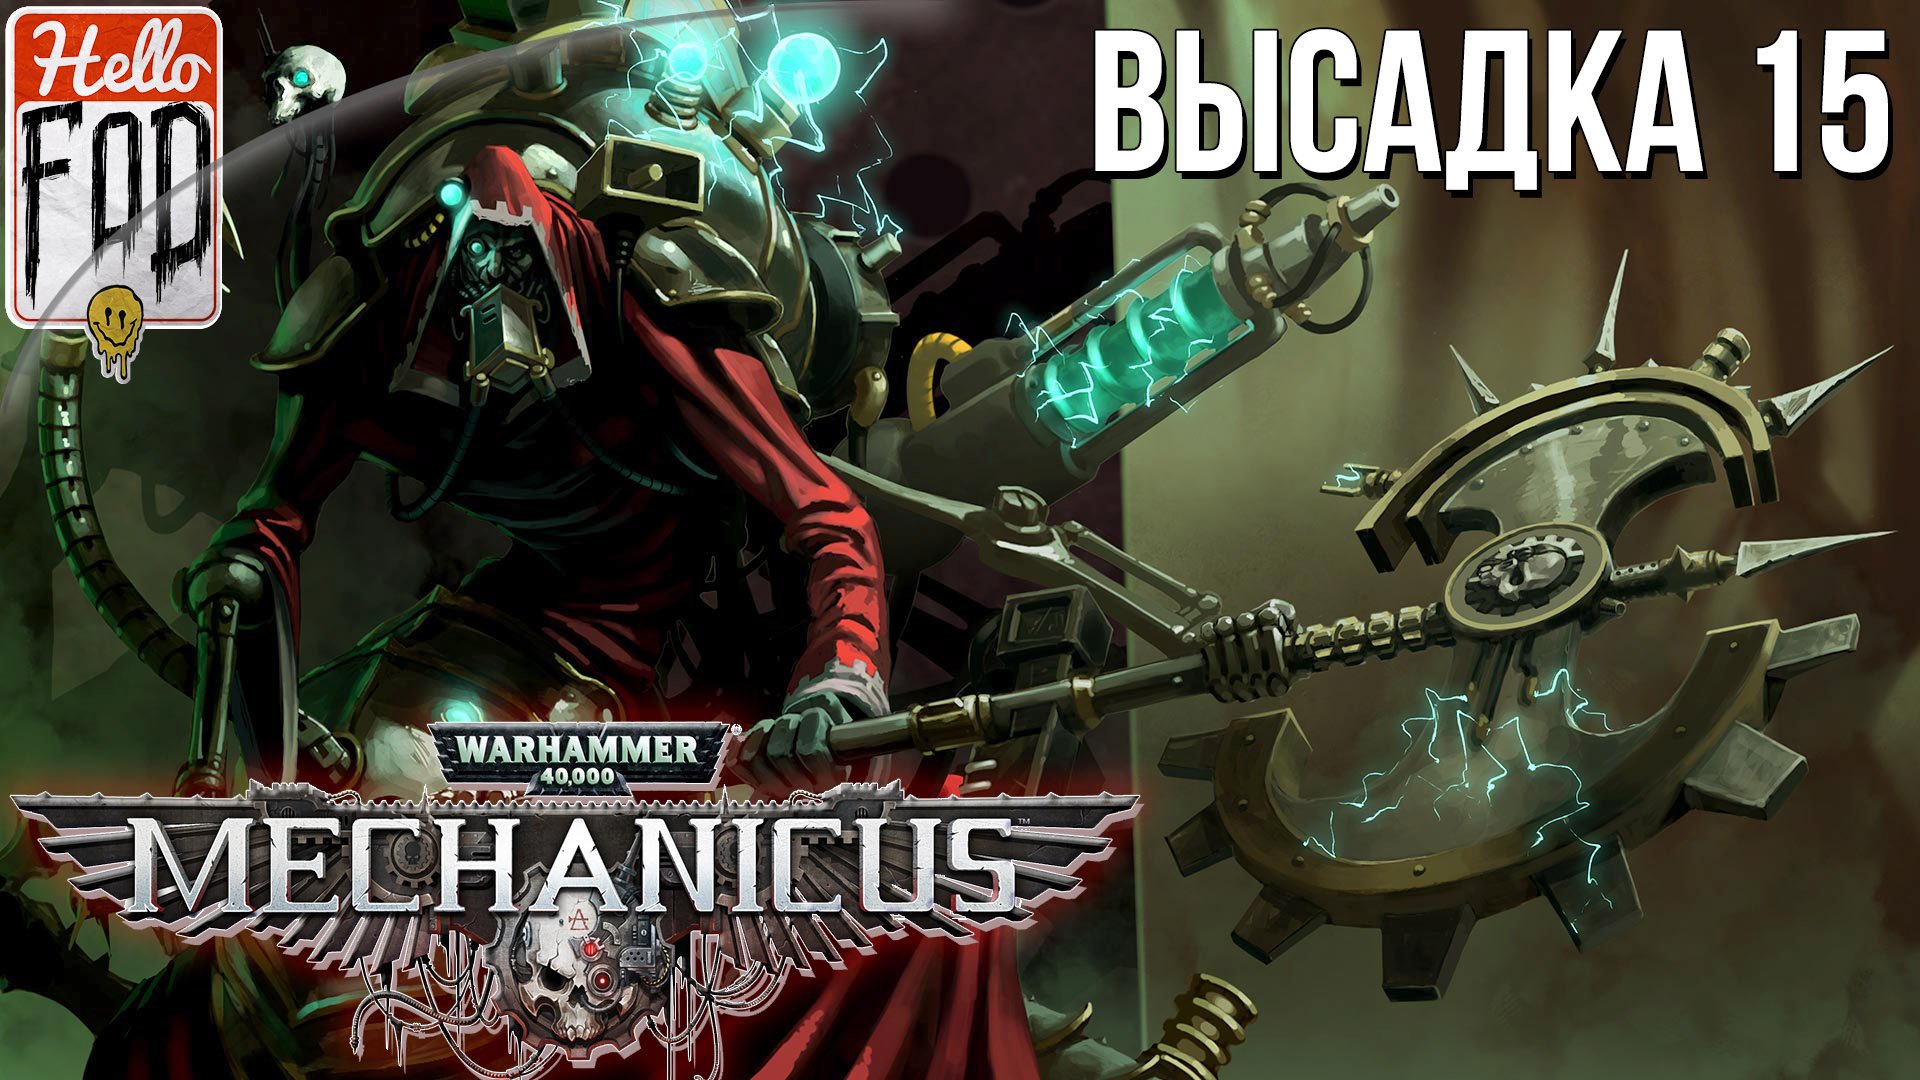 Warhammer 40.000 Mechanicus (Сложность: Очень сложно) ➤ Осквернённый царь ➤ Высадка 15.